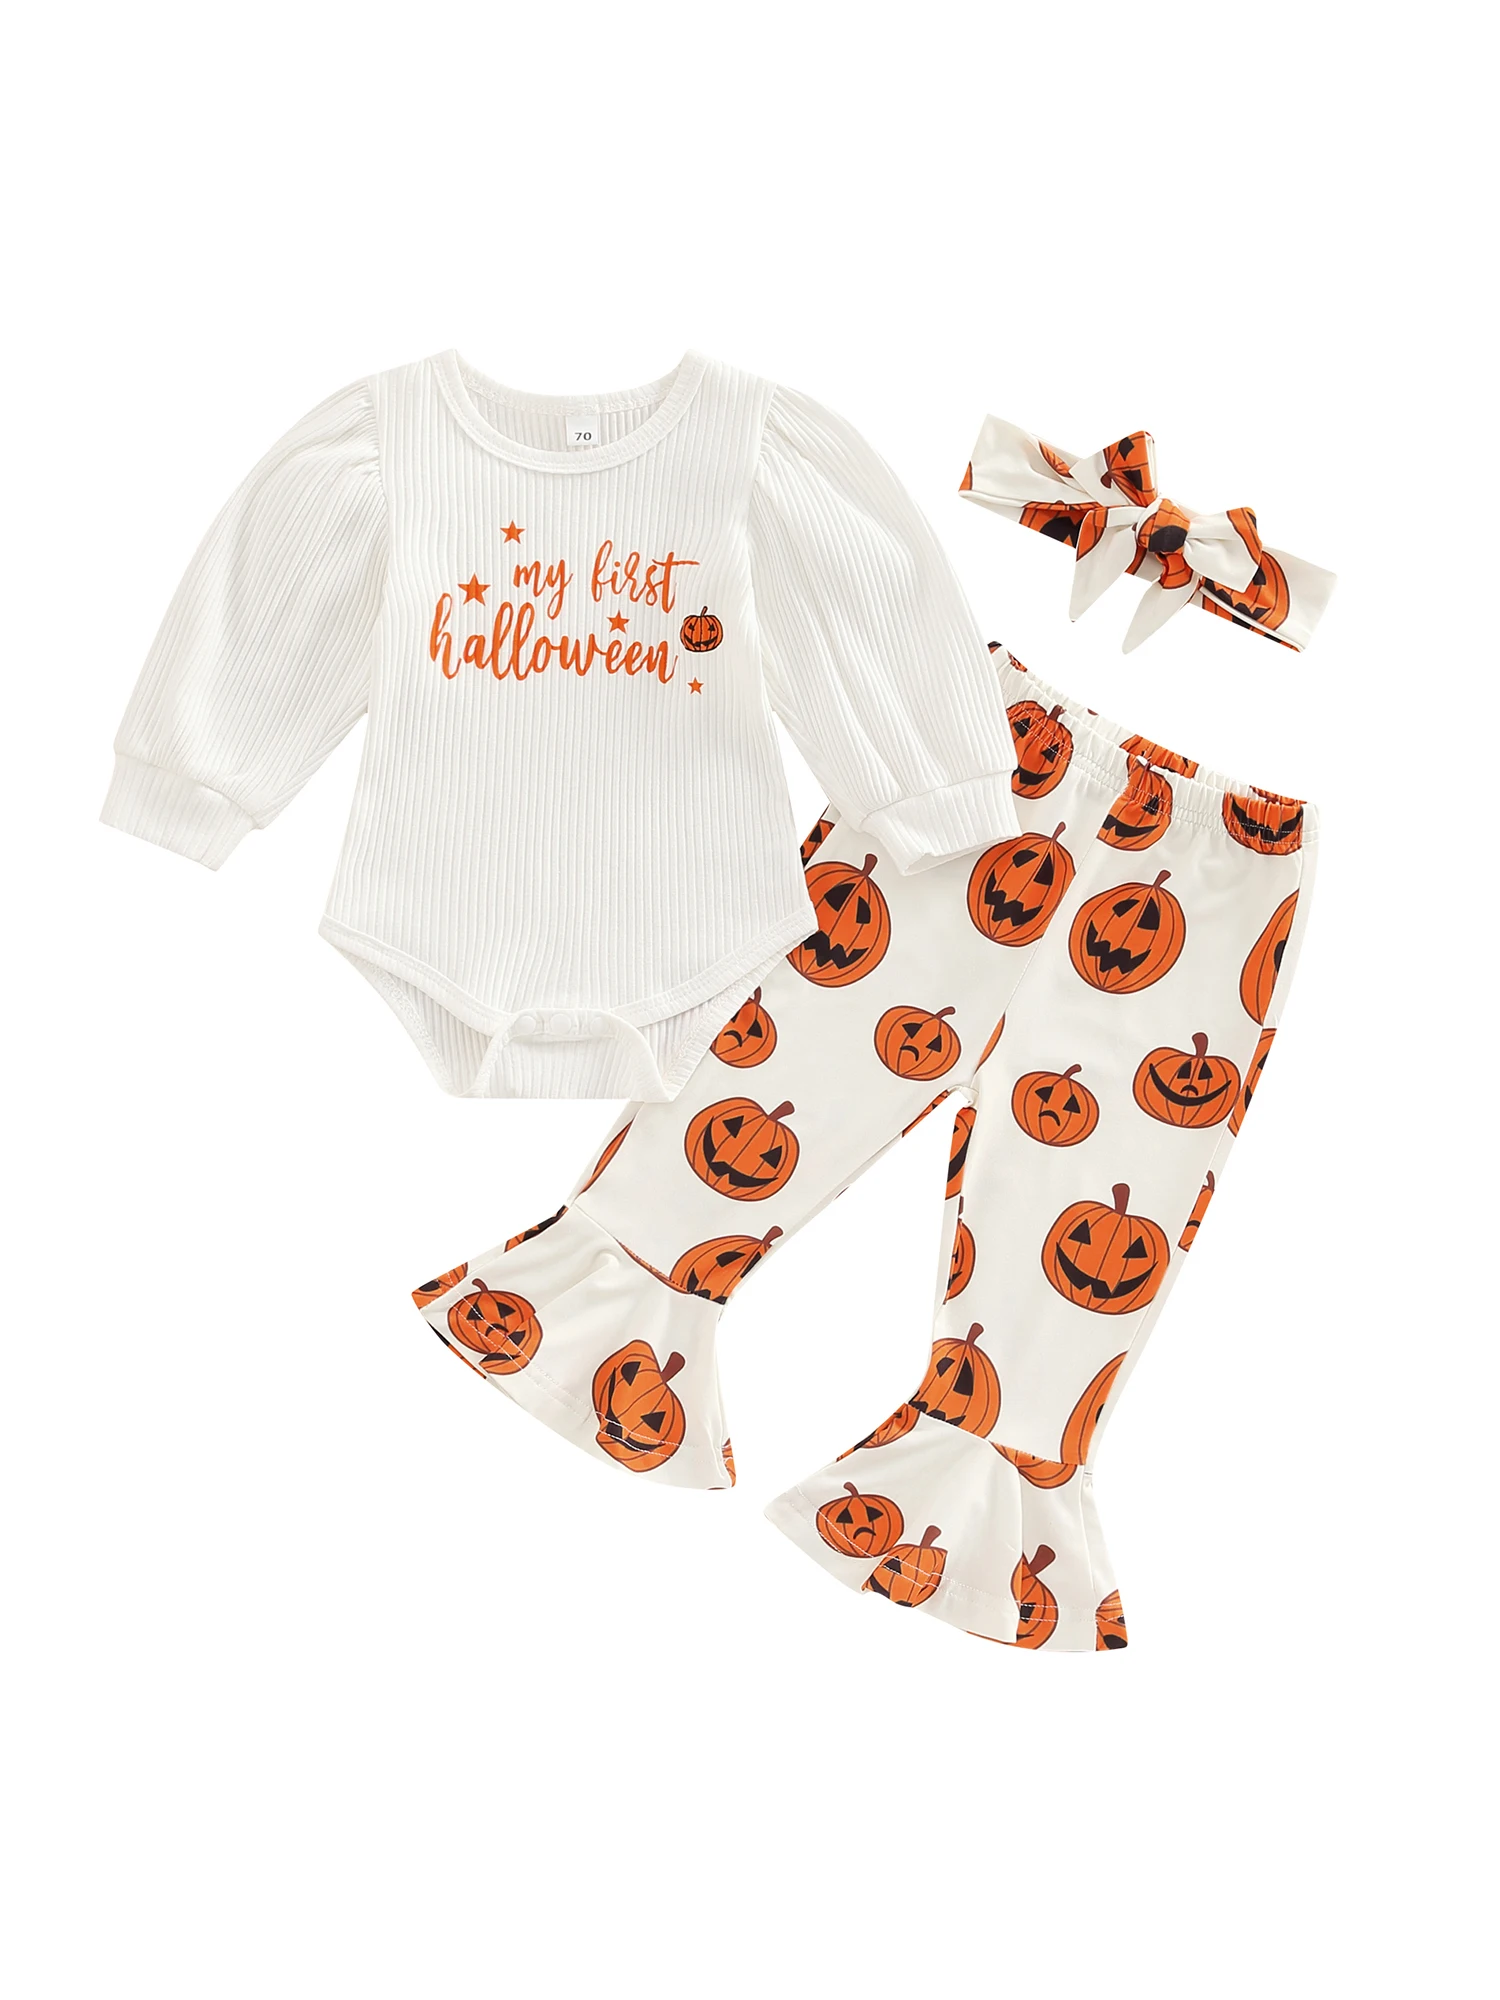 

Костюм на Хэллоуин для маленьких мальчиков, комбинезон с принтом тыквы для новорожденных, полосатые брюки, шапка, осенний наряд, 3 шт.